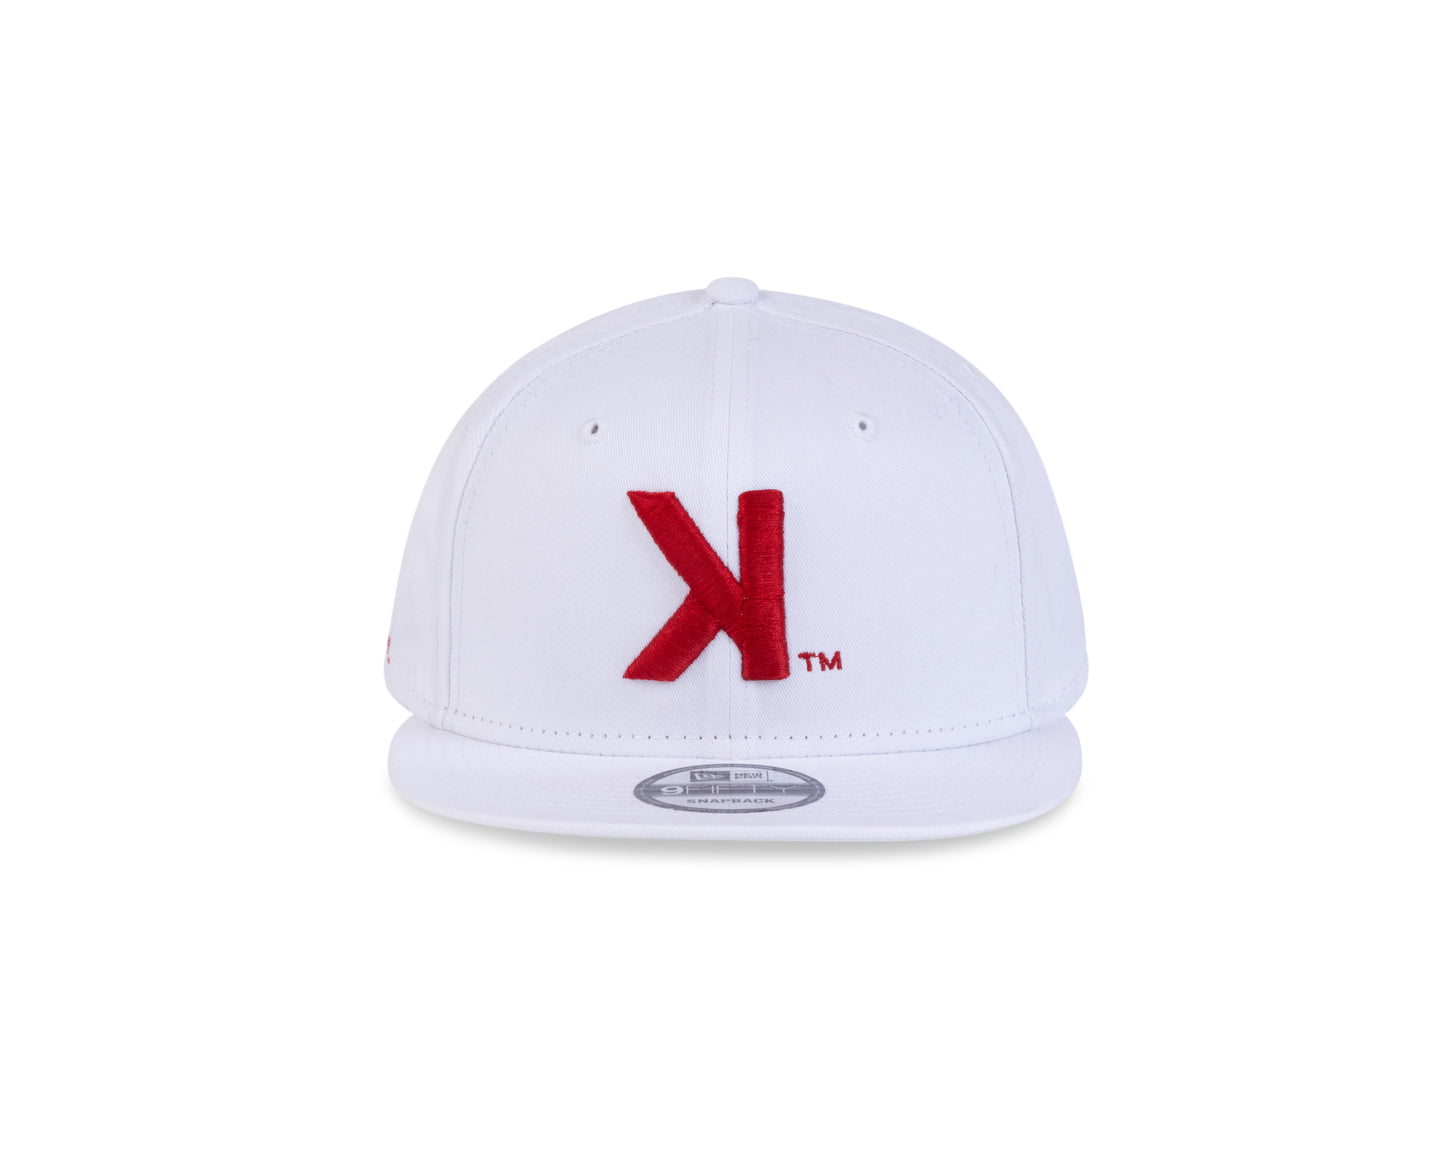 The Backwards K Hat (New Era)